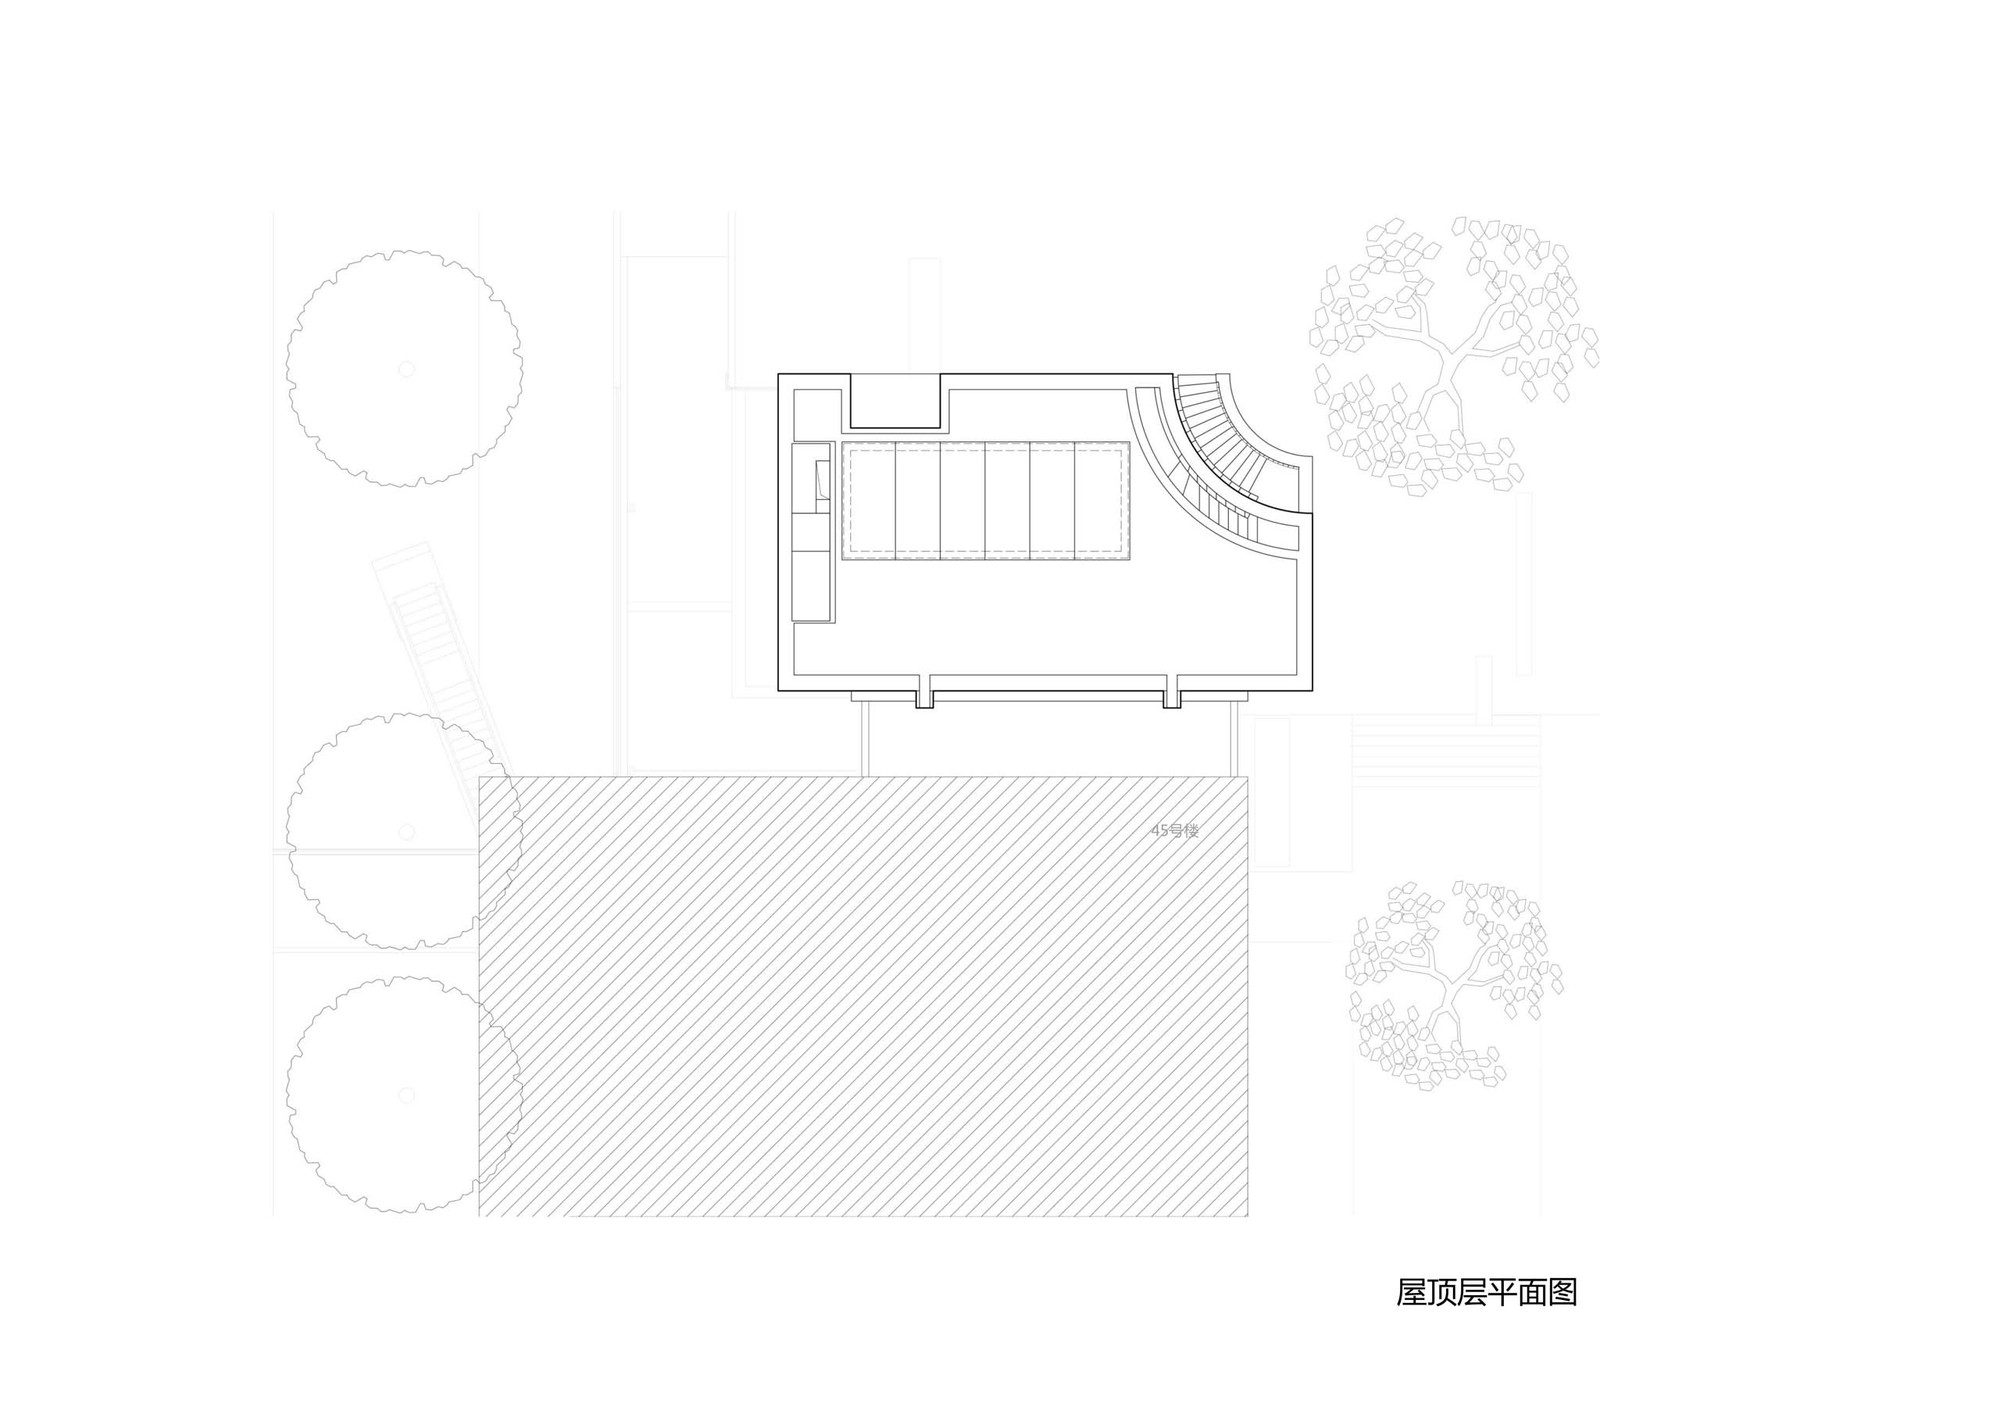 22_南京艺术学院加建展馆-屋顶层平面.jpg